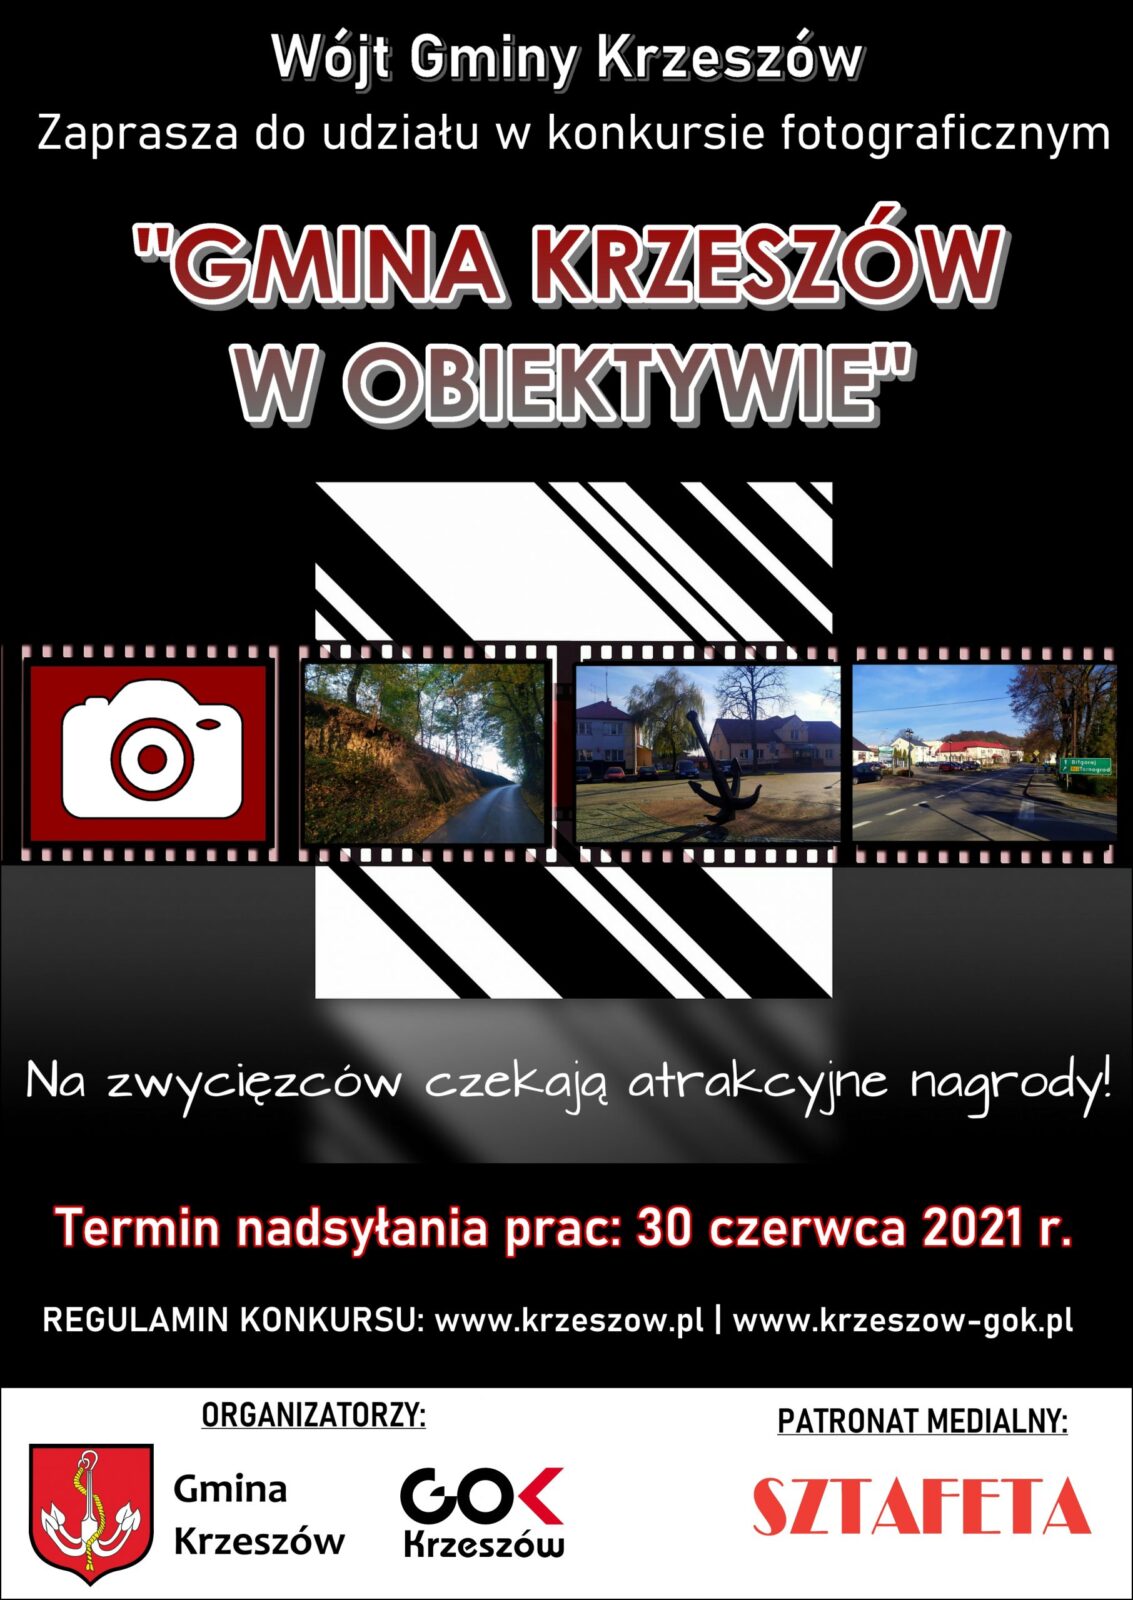 Konkurs fotograficzny "Gmina Krzeszów w obiektywie"